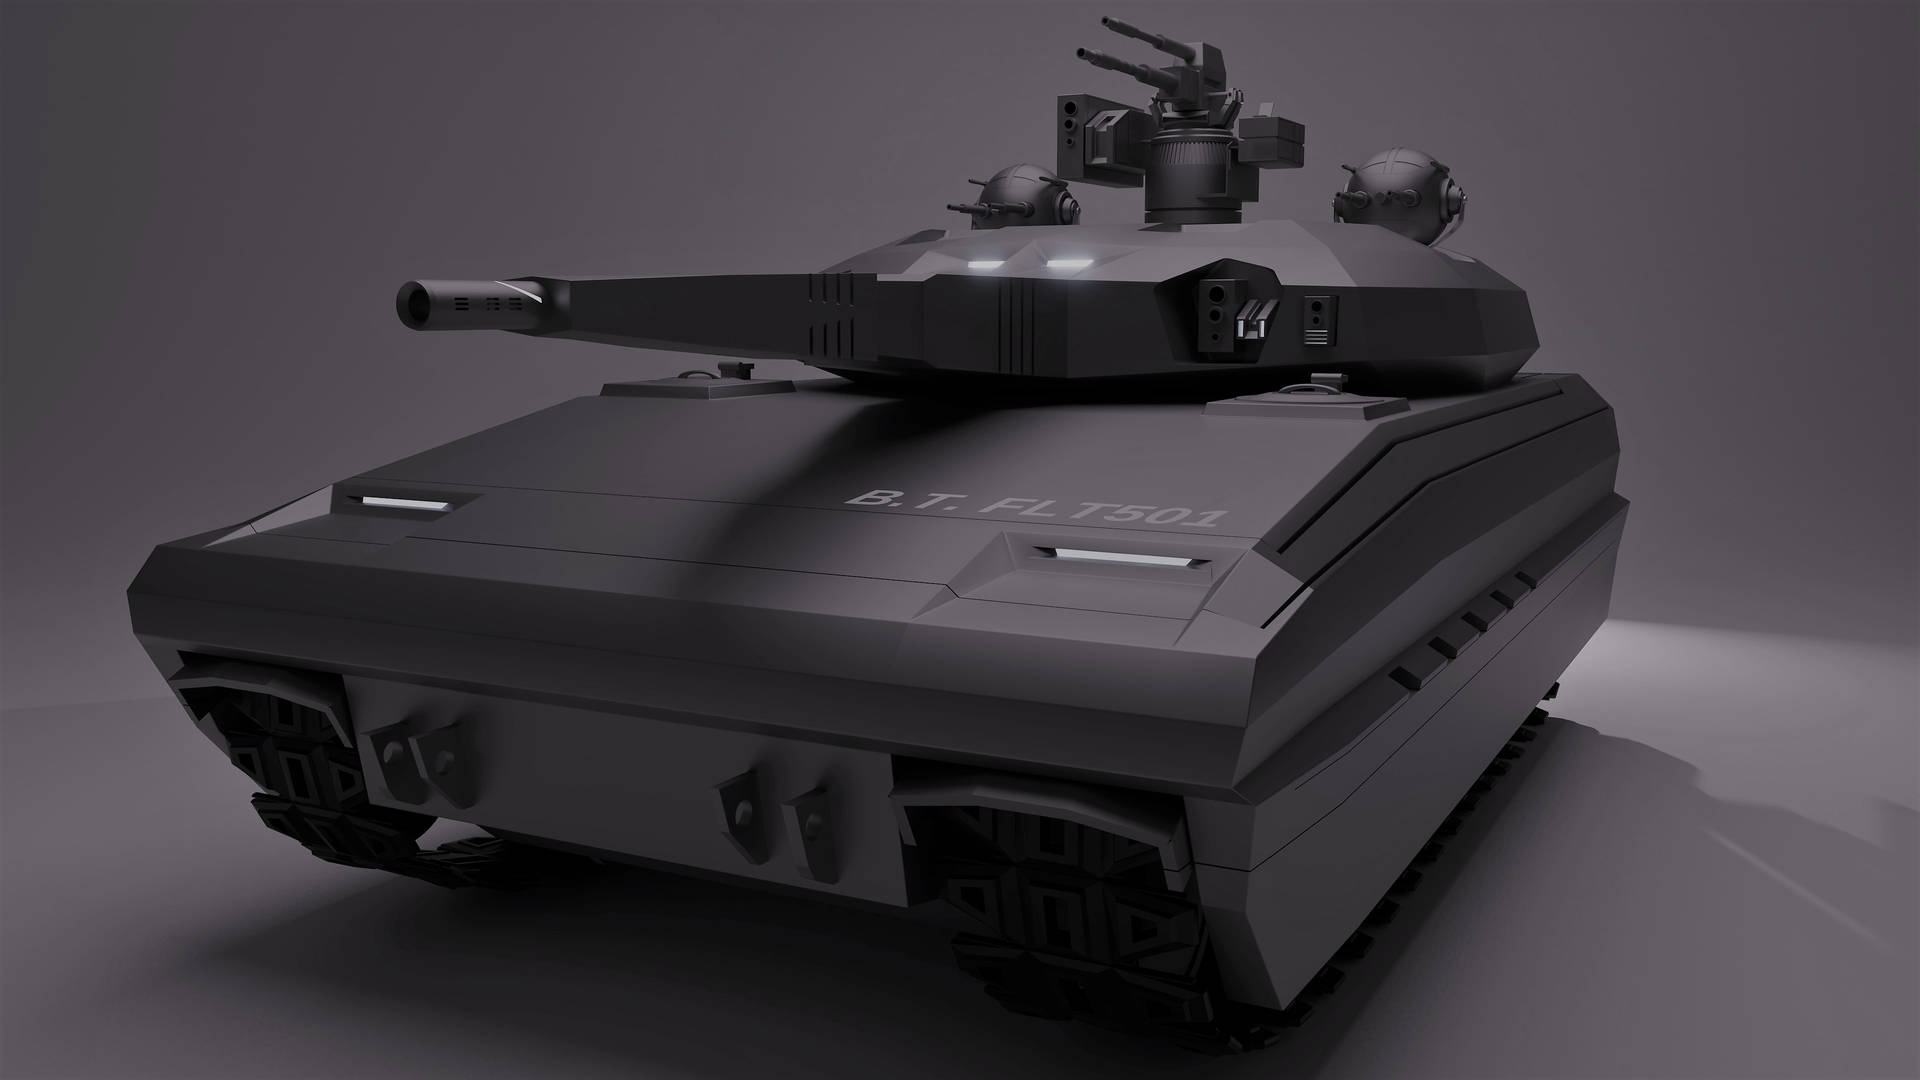 Modelorenderizado Digitalmente De Un Tanque. Fondo de pantalla